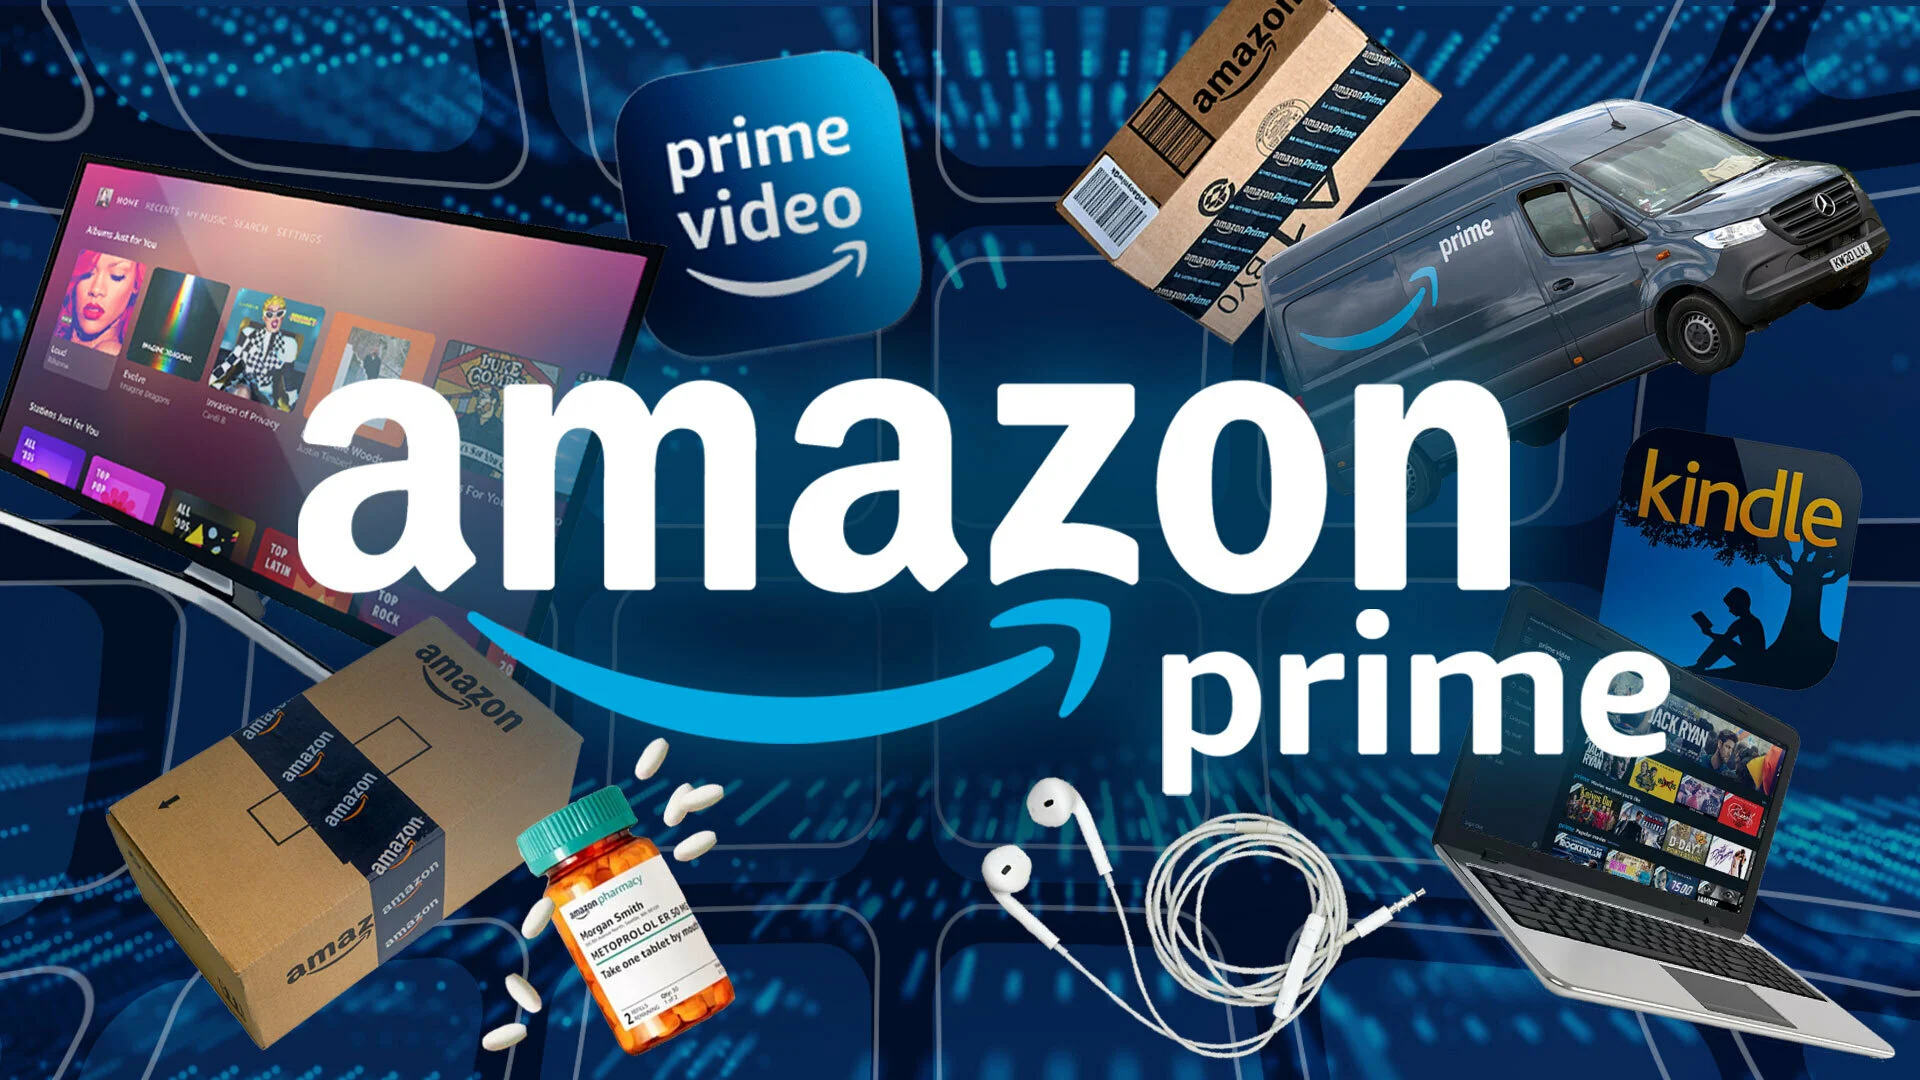 Come iscriversi gratis ad Amazon Prime